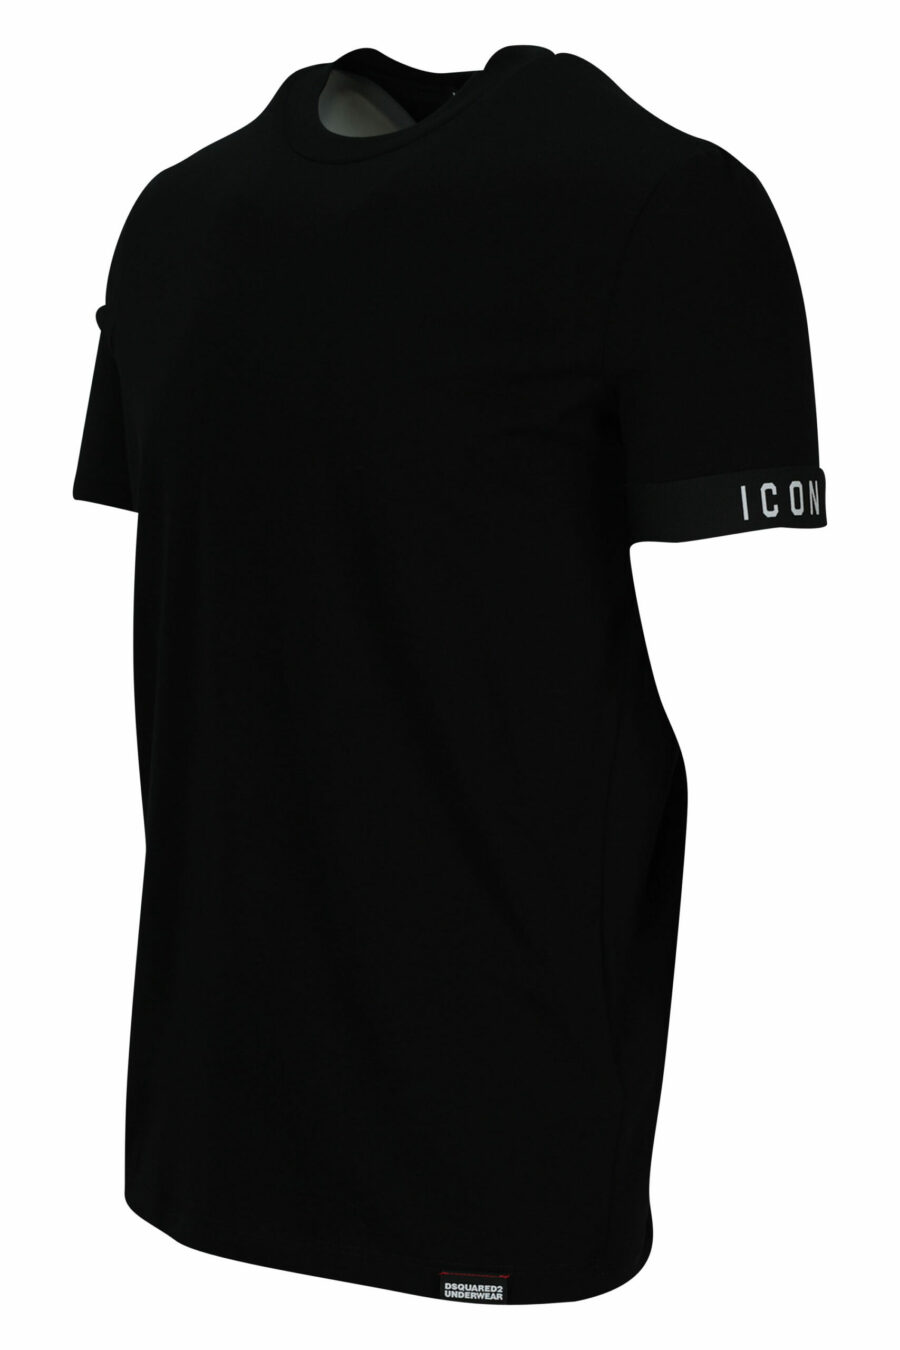 T-shirt noir avec petit logo - 8032674767431 1 échelle